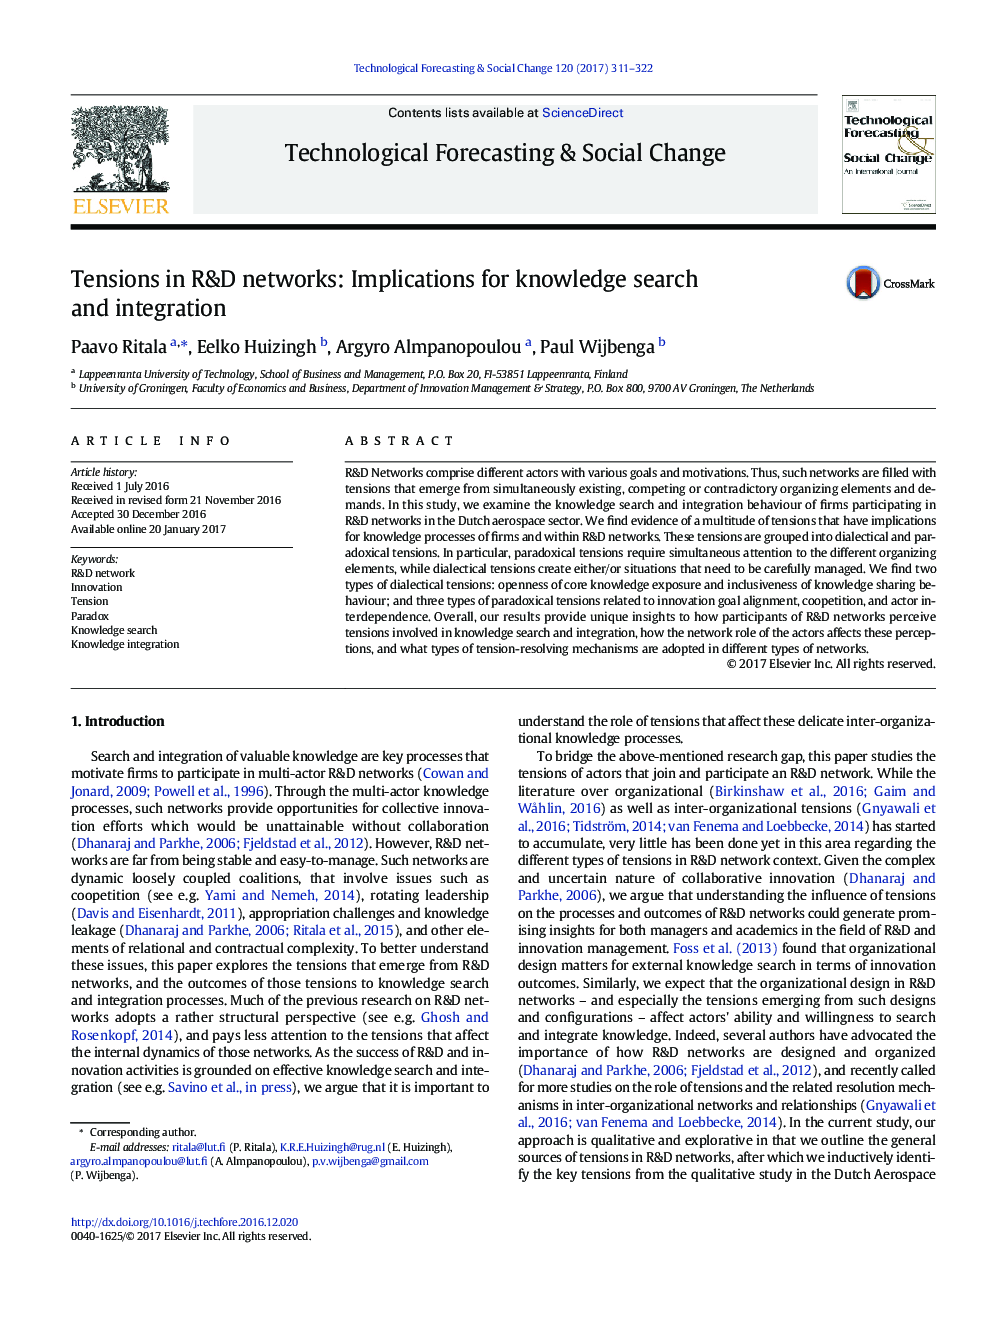 تنش در شبکه های تحقیق و توسعه: پیامدهای جستجو و ادغام دانش